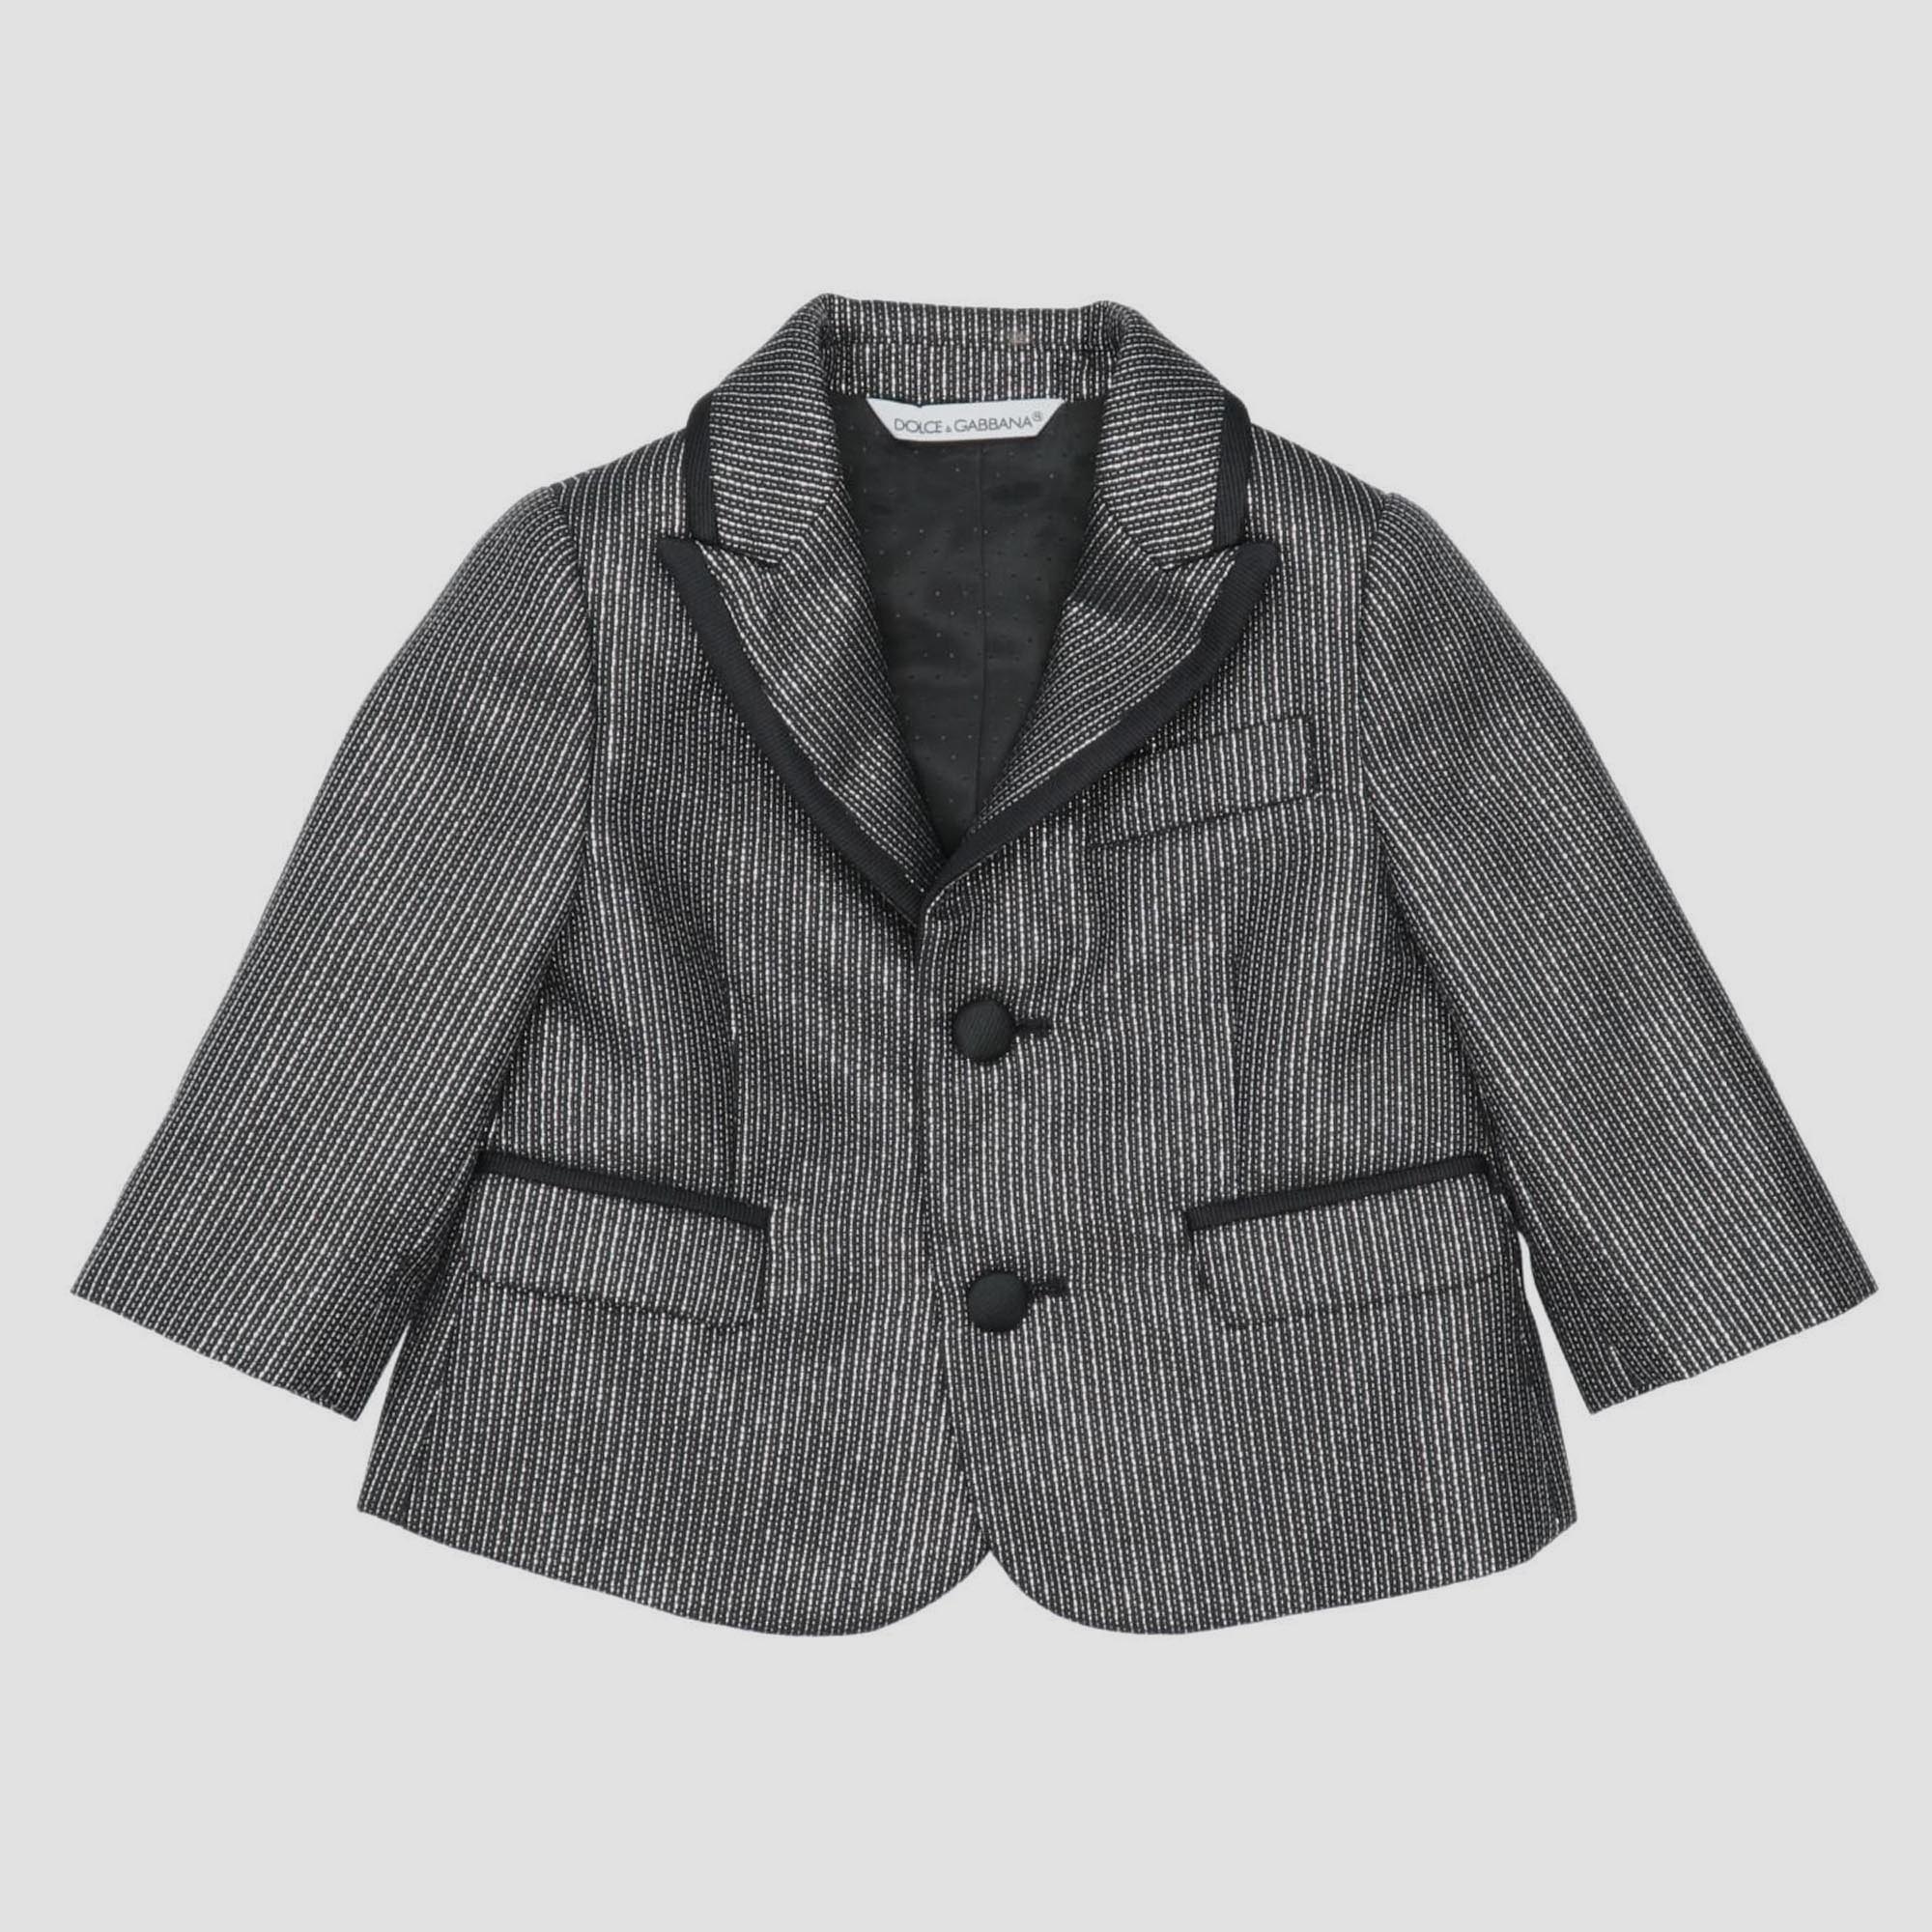 Dolce & gabbana black lurex wool blend blazer size 6-9m